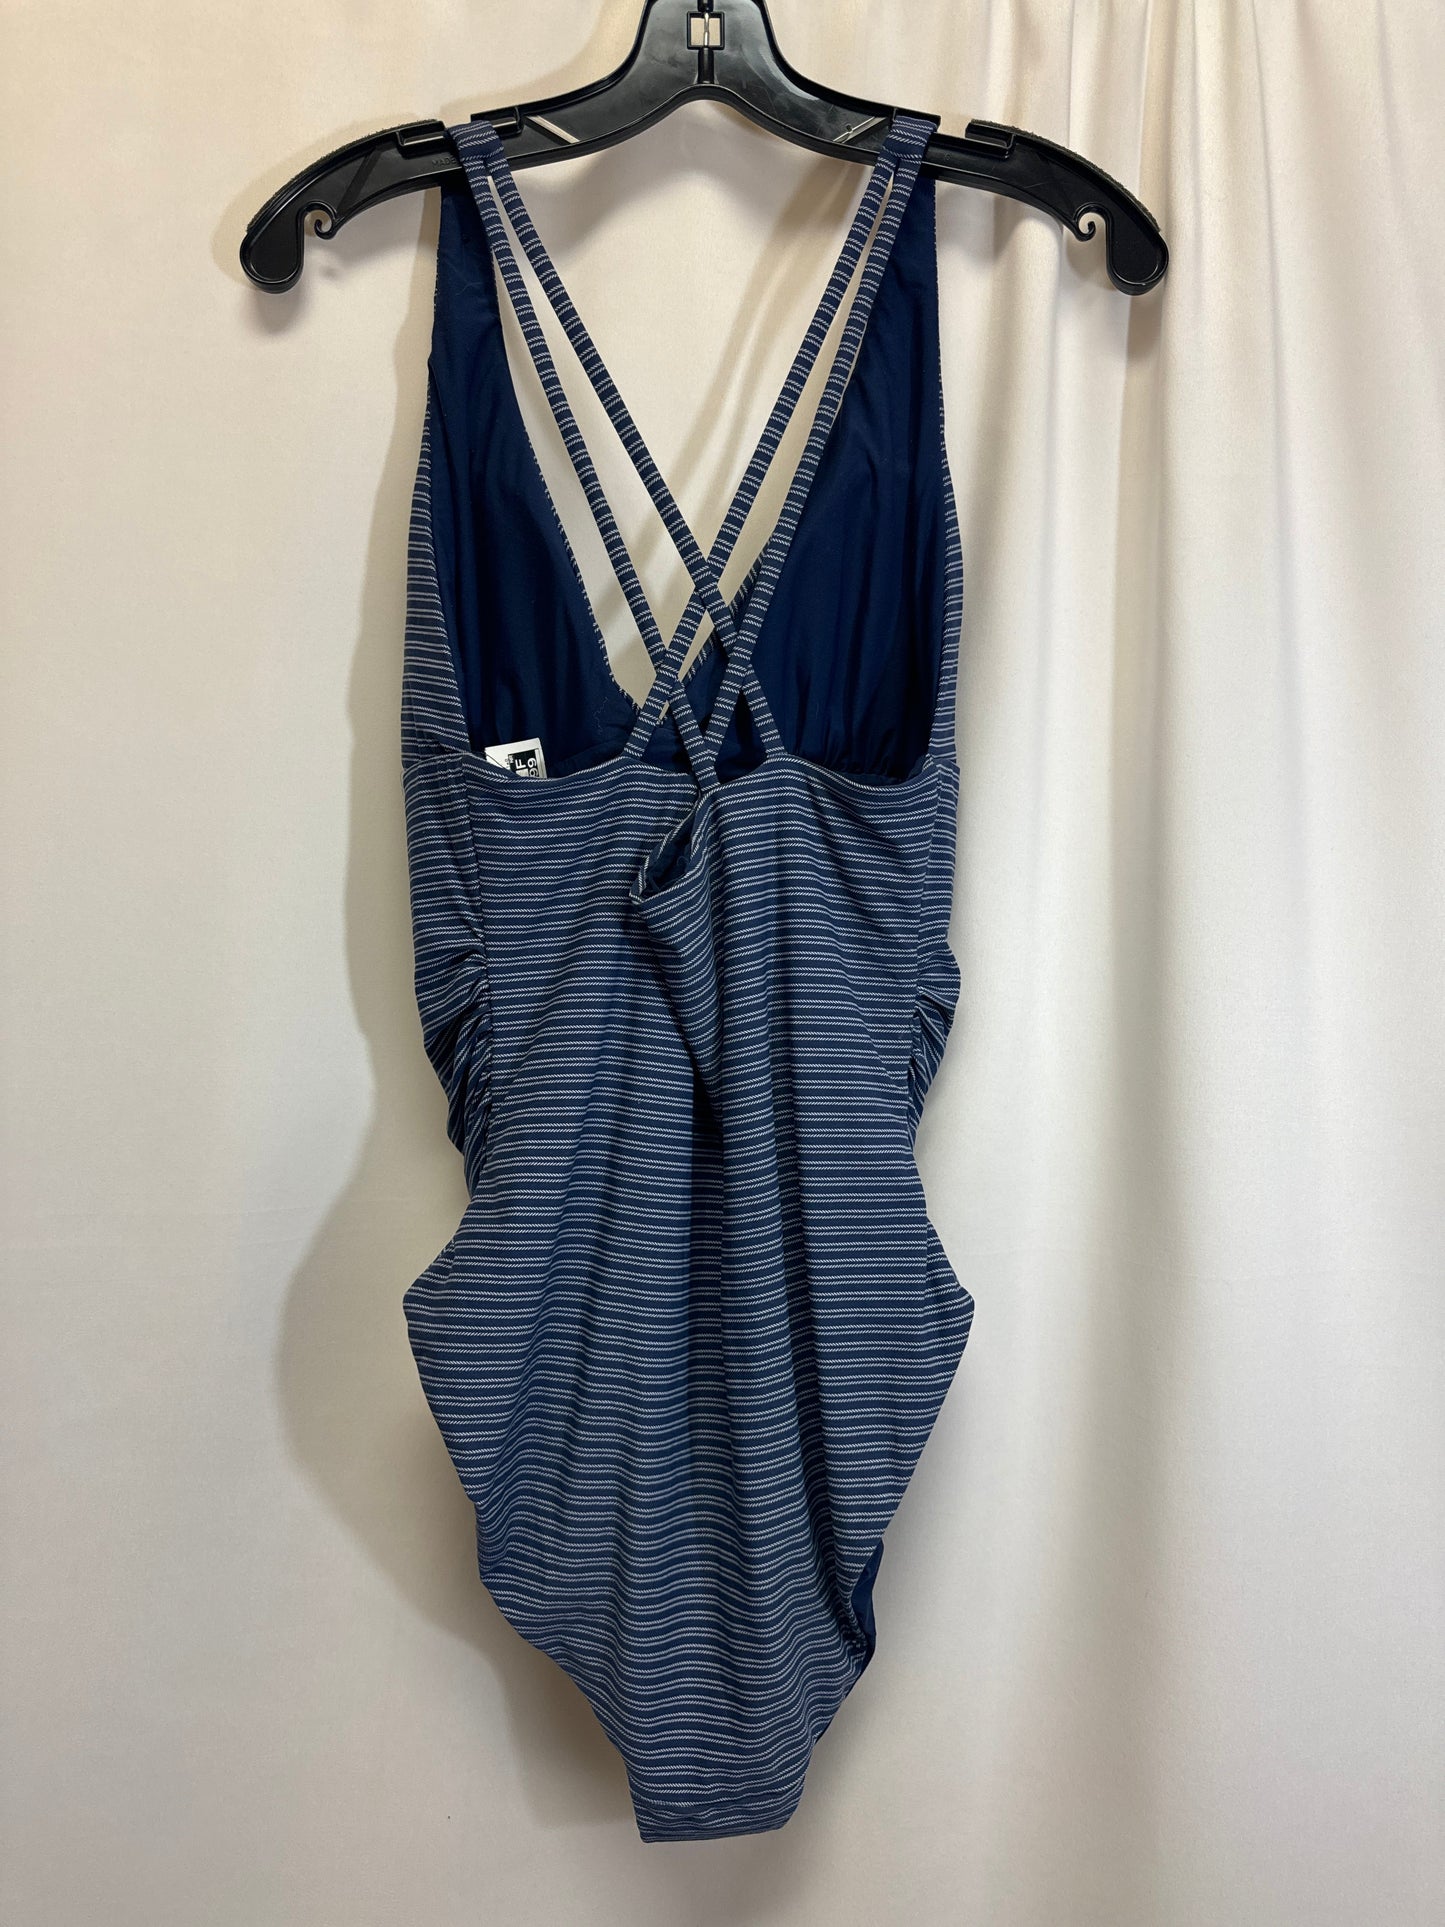 Blue Swimsuit Clothes Mentor, Size L